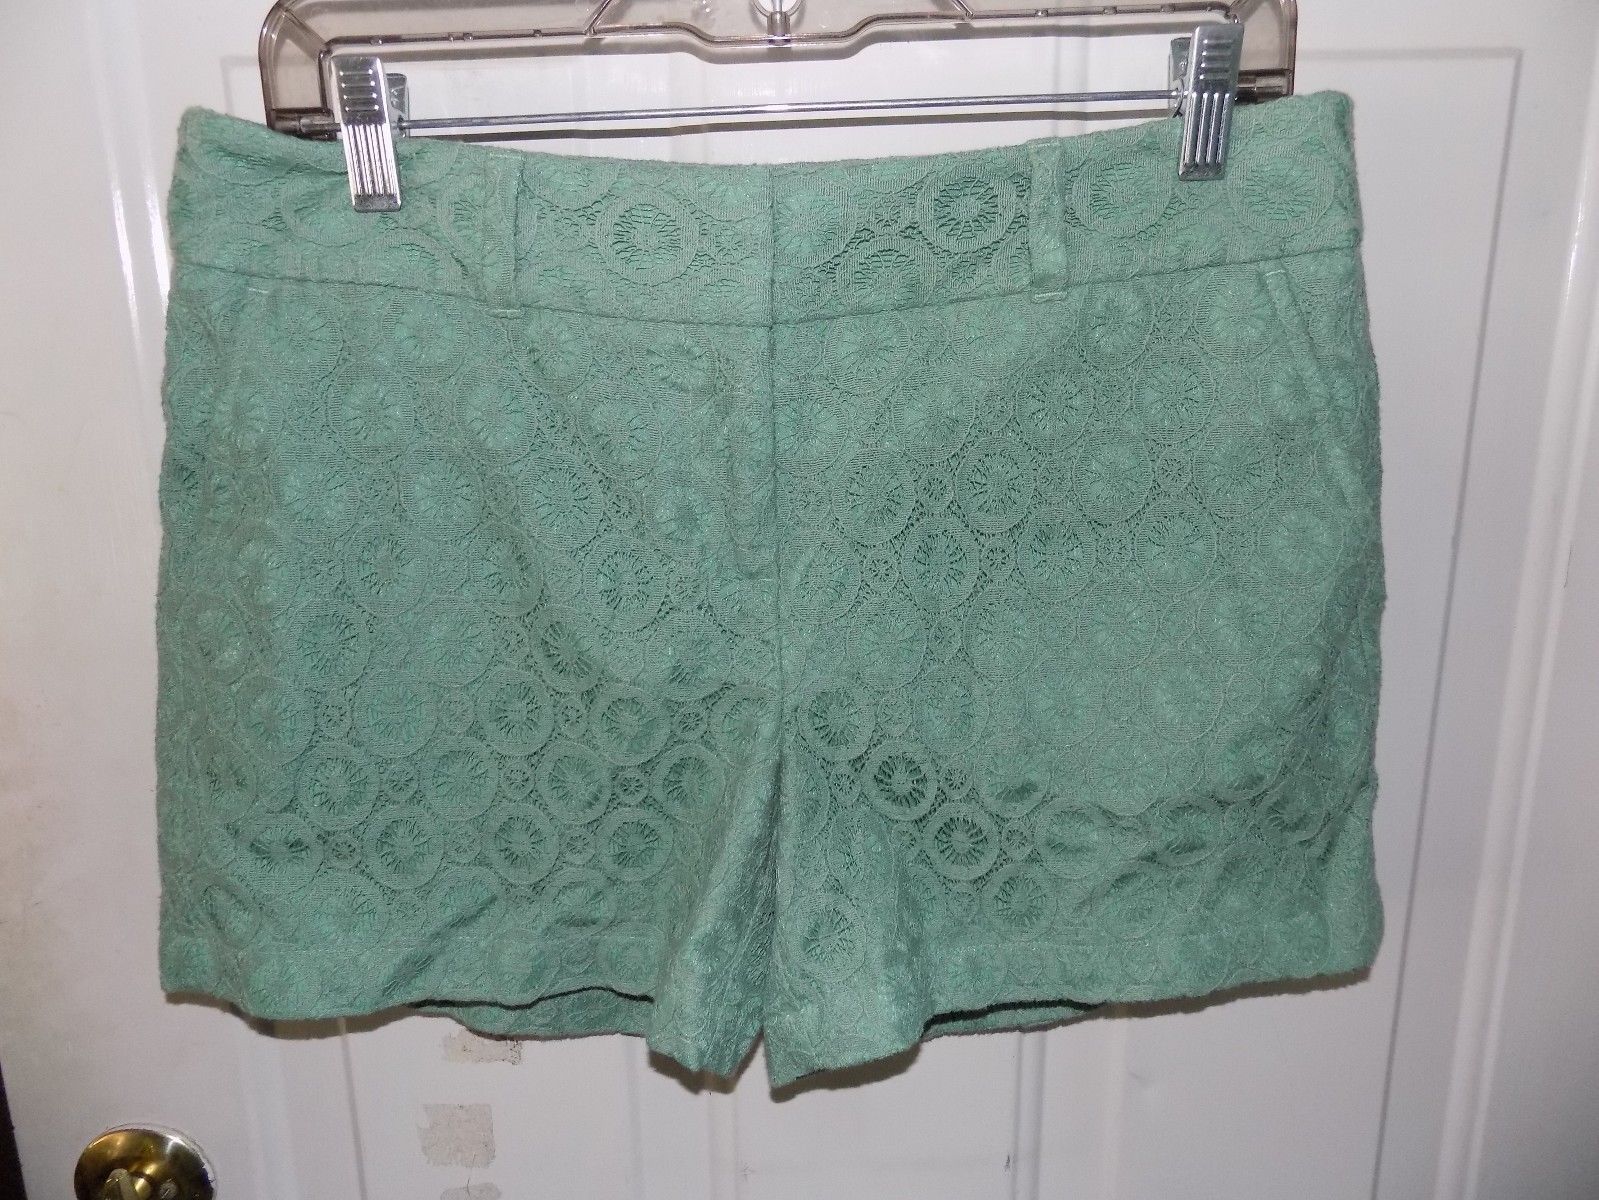 1861 ann taylor loft outlet sage lace mid rise shorts size 4 women's nwot